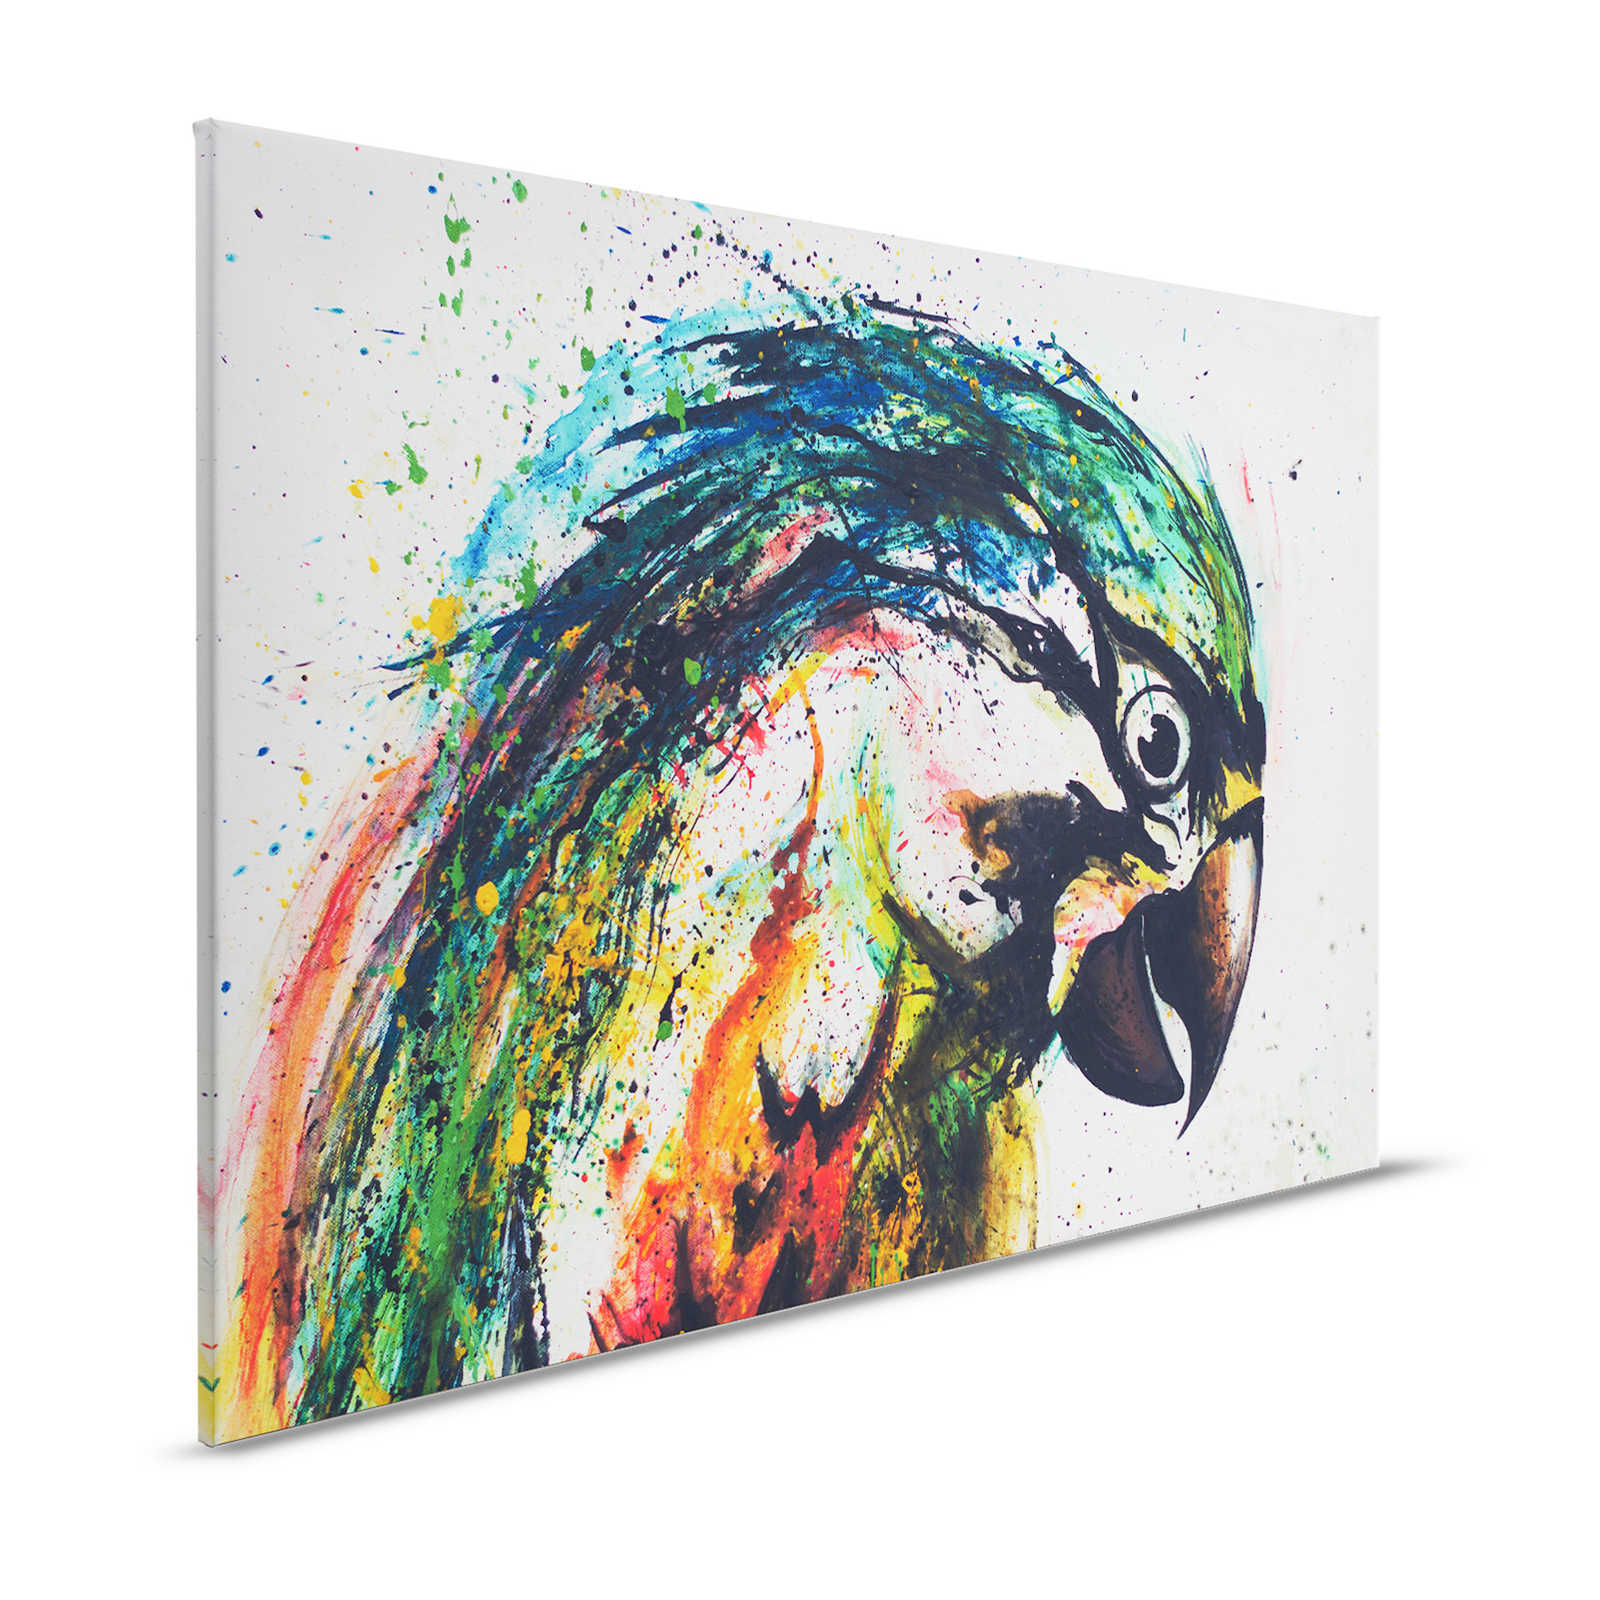 Leinwandbild Papagei im bunten Zeichenstil – 1,20 m x 0,80 m
